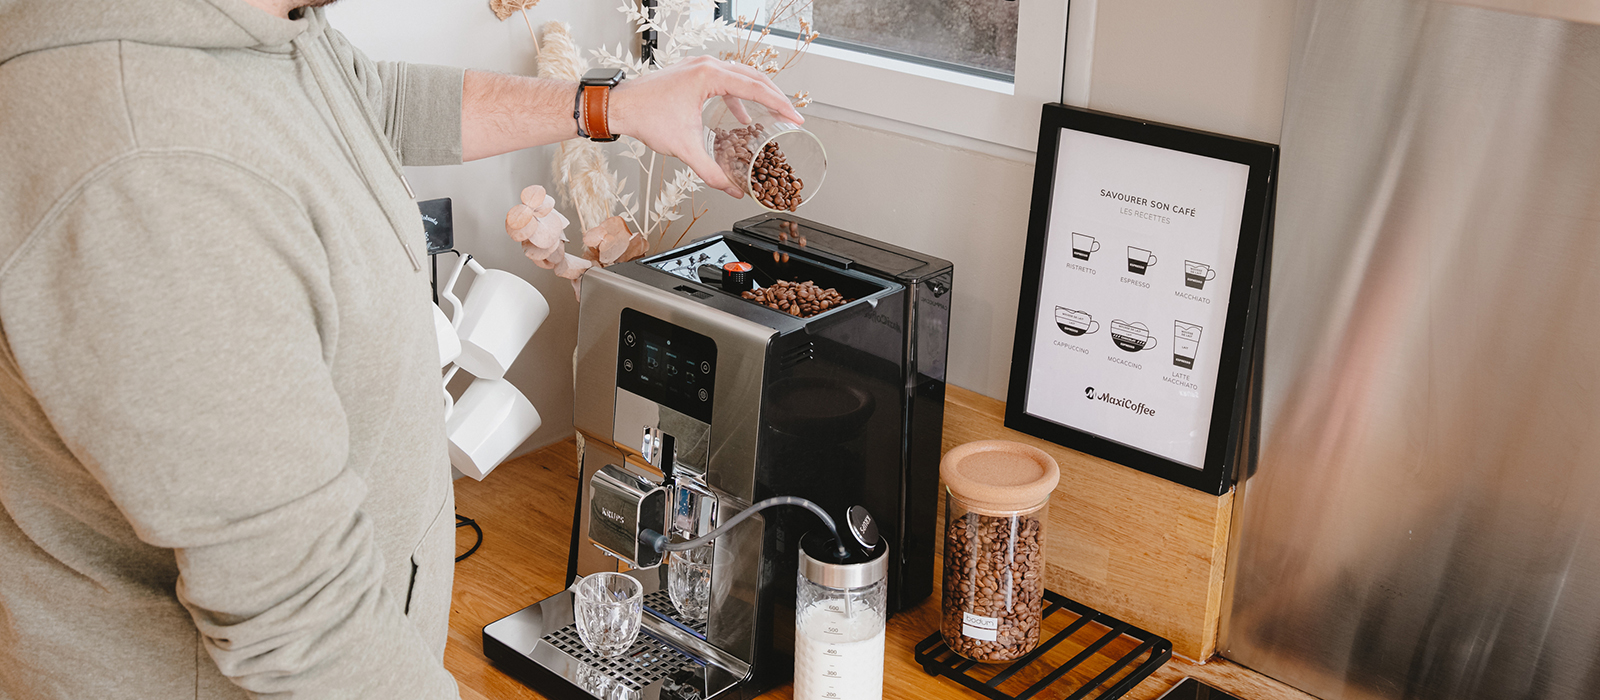 Machine à café grains robot broyeur Krups Arabica LATTE - EA819N10